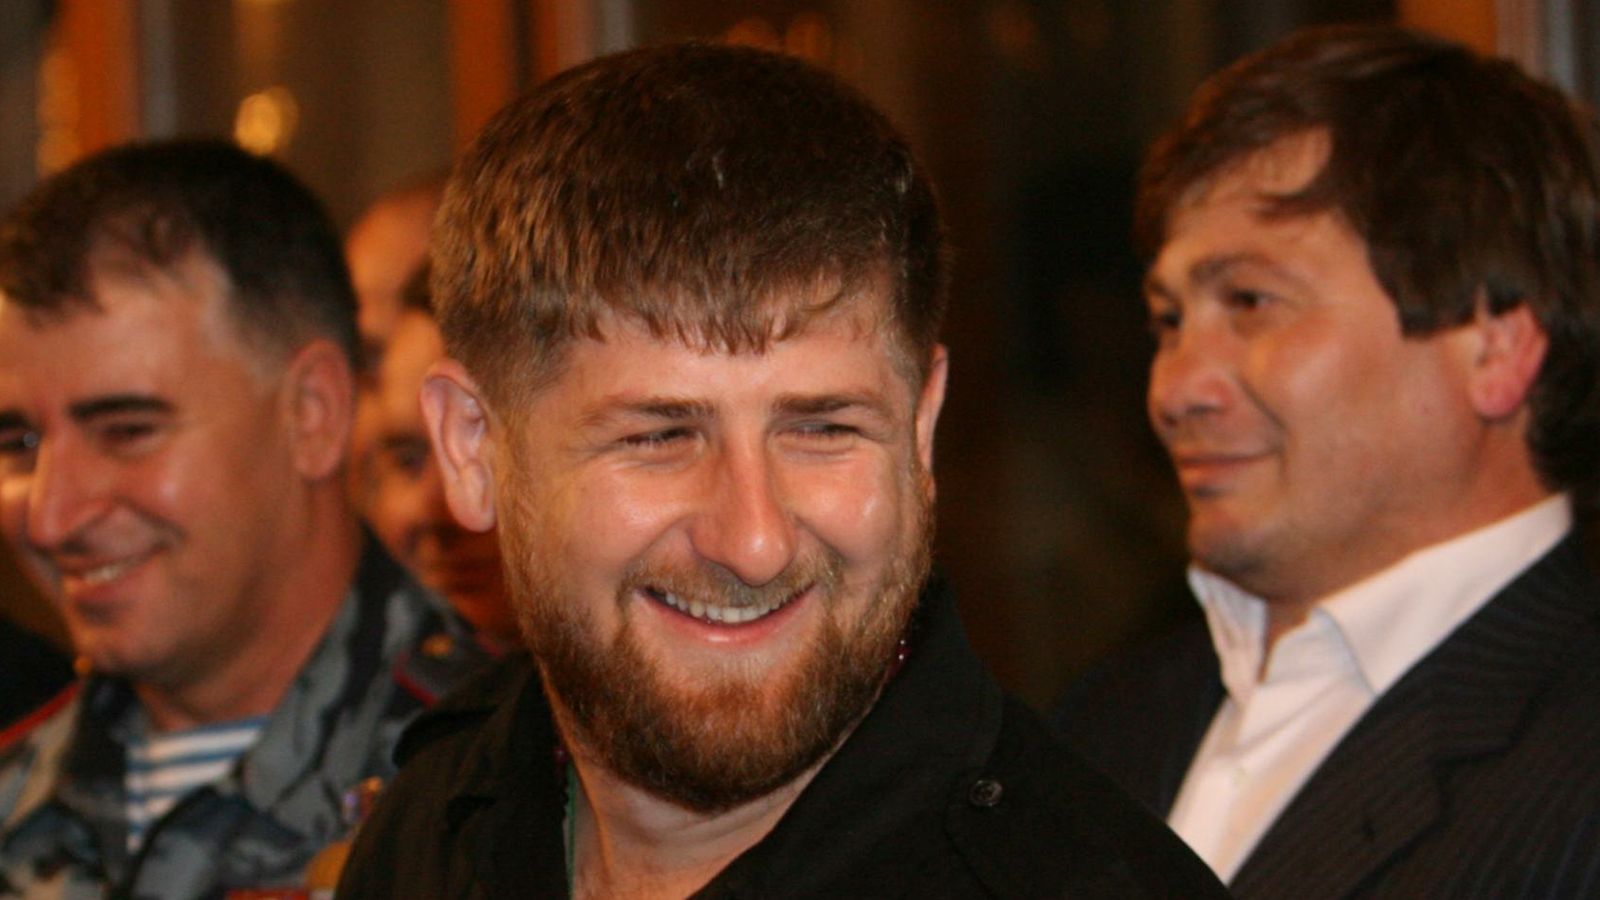 Глава Чечни Кадыров в конце прямой линии отжался 35 раз